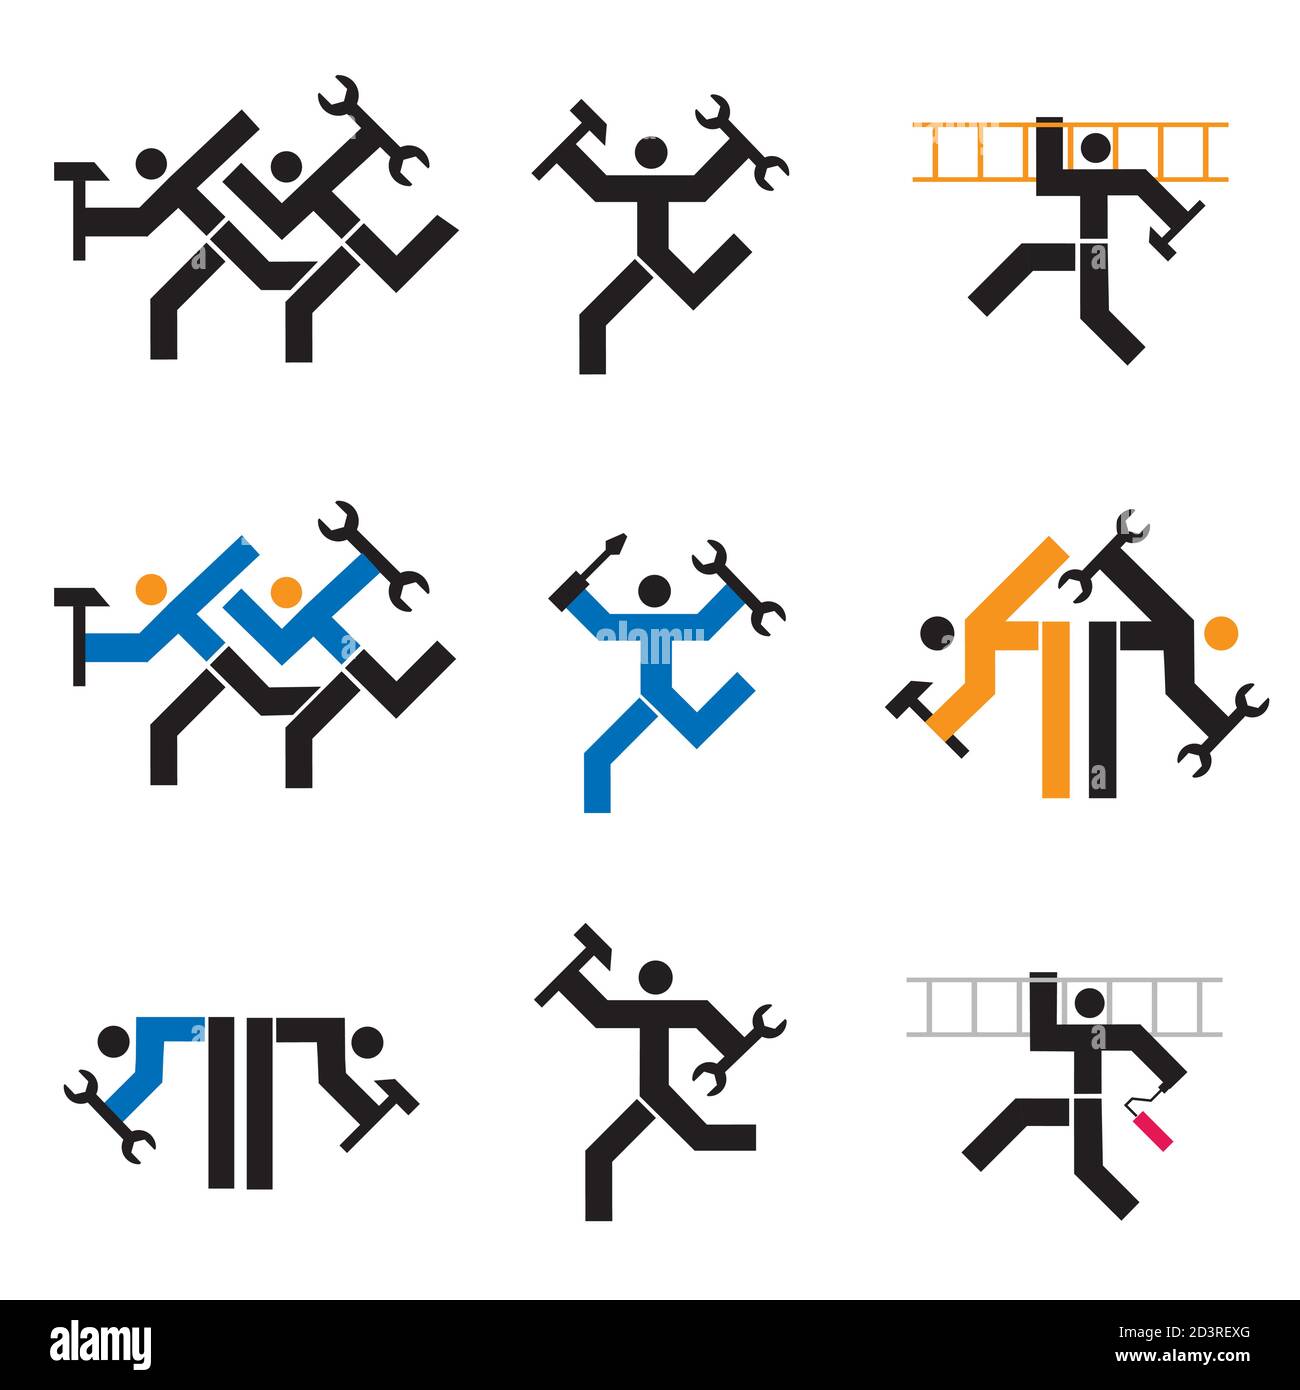 Handwerker, Monteur, Handwerker Ikonen. Set von schwarzen ein buntes Symbole mit Arbeitern mit Werkzeugen. Vektor verfügbar. Stock Vektor